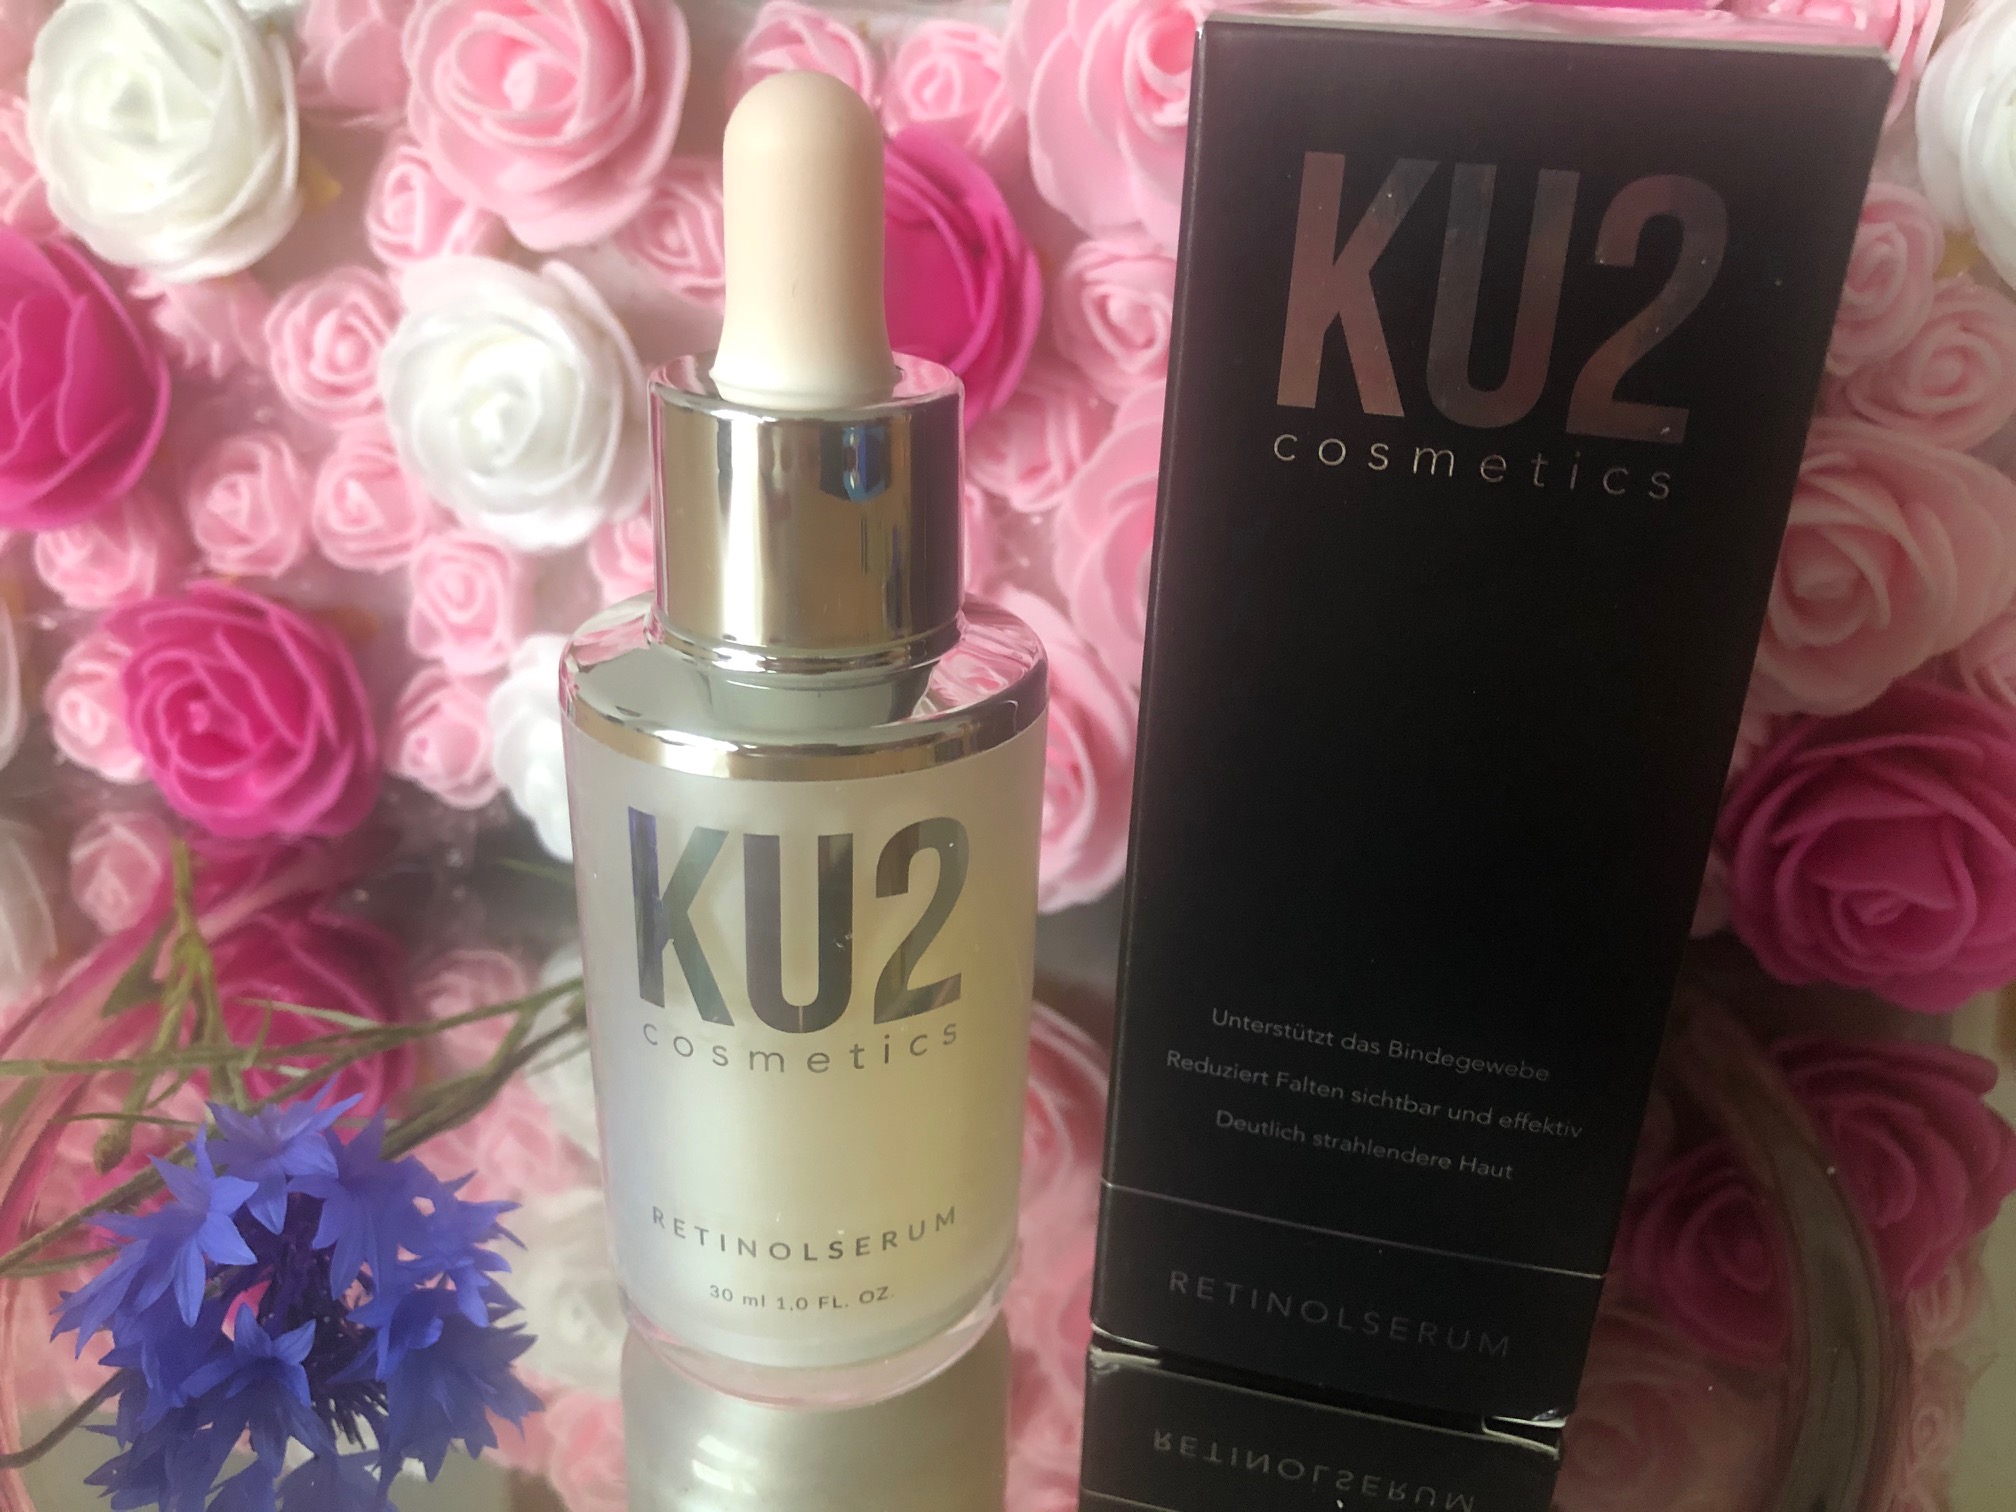 KU2 Cosmetics Retinolserum im Test und Erfahrung 